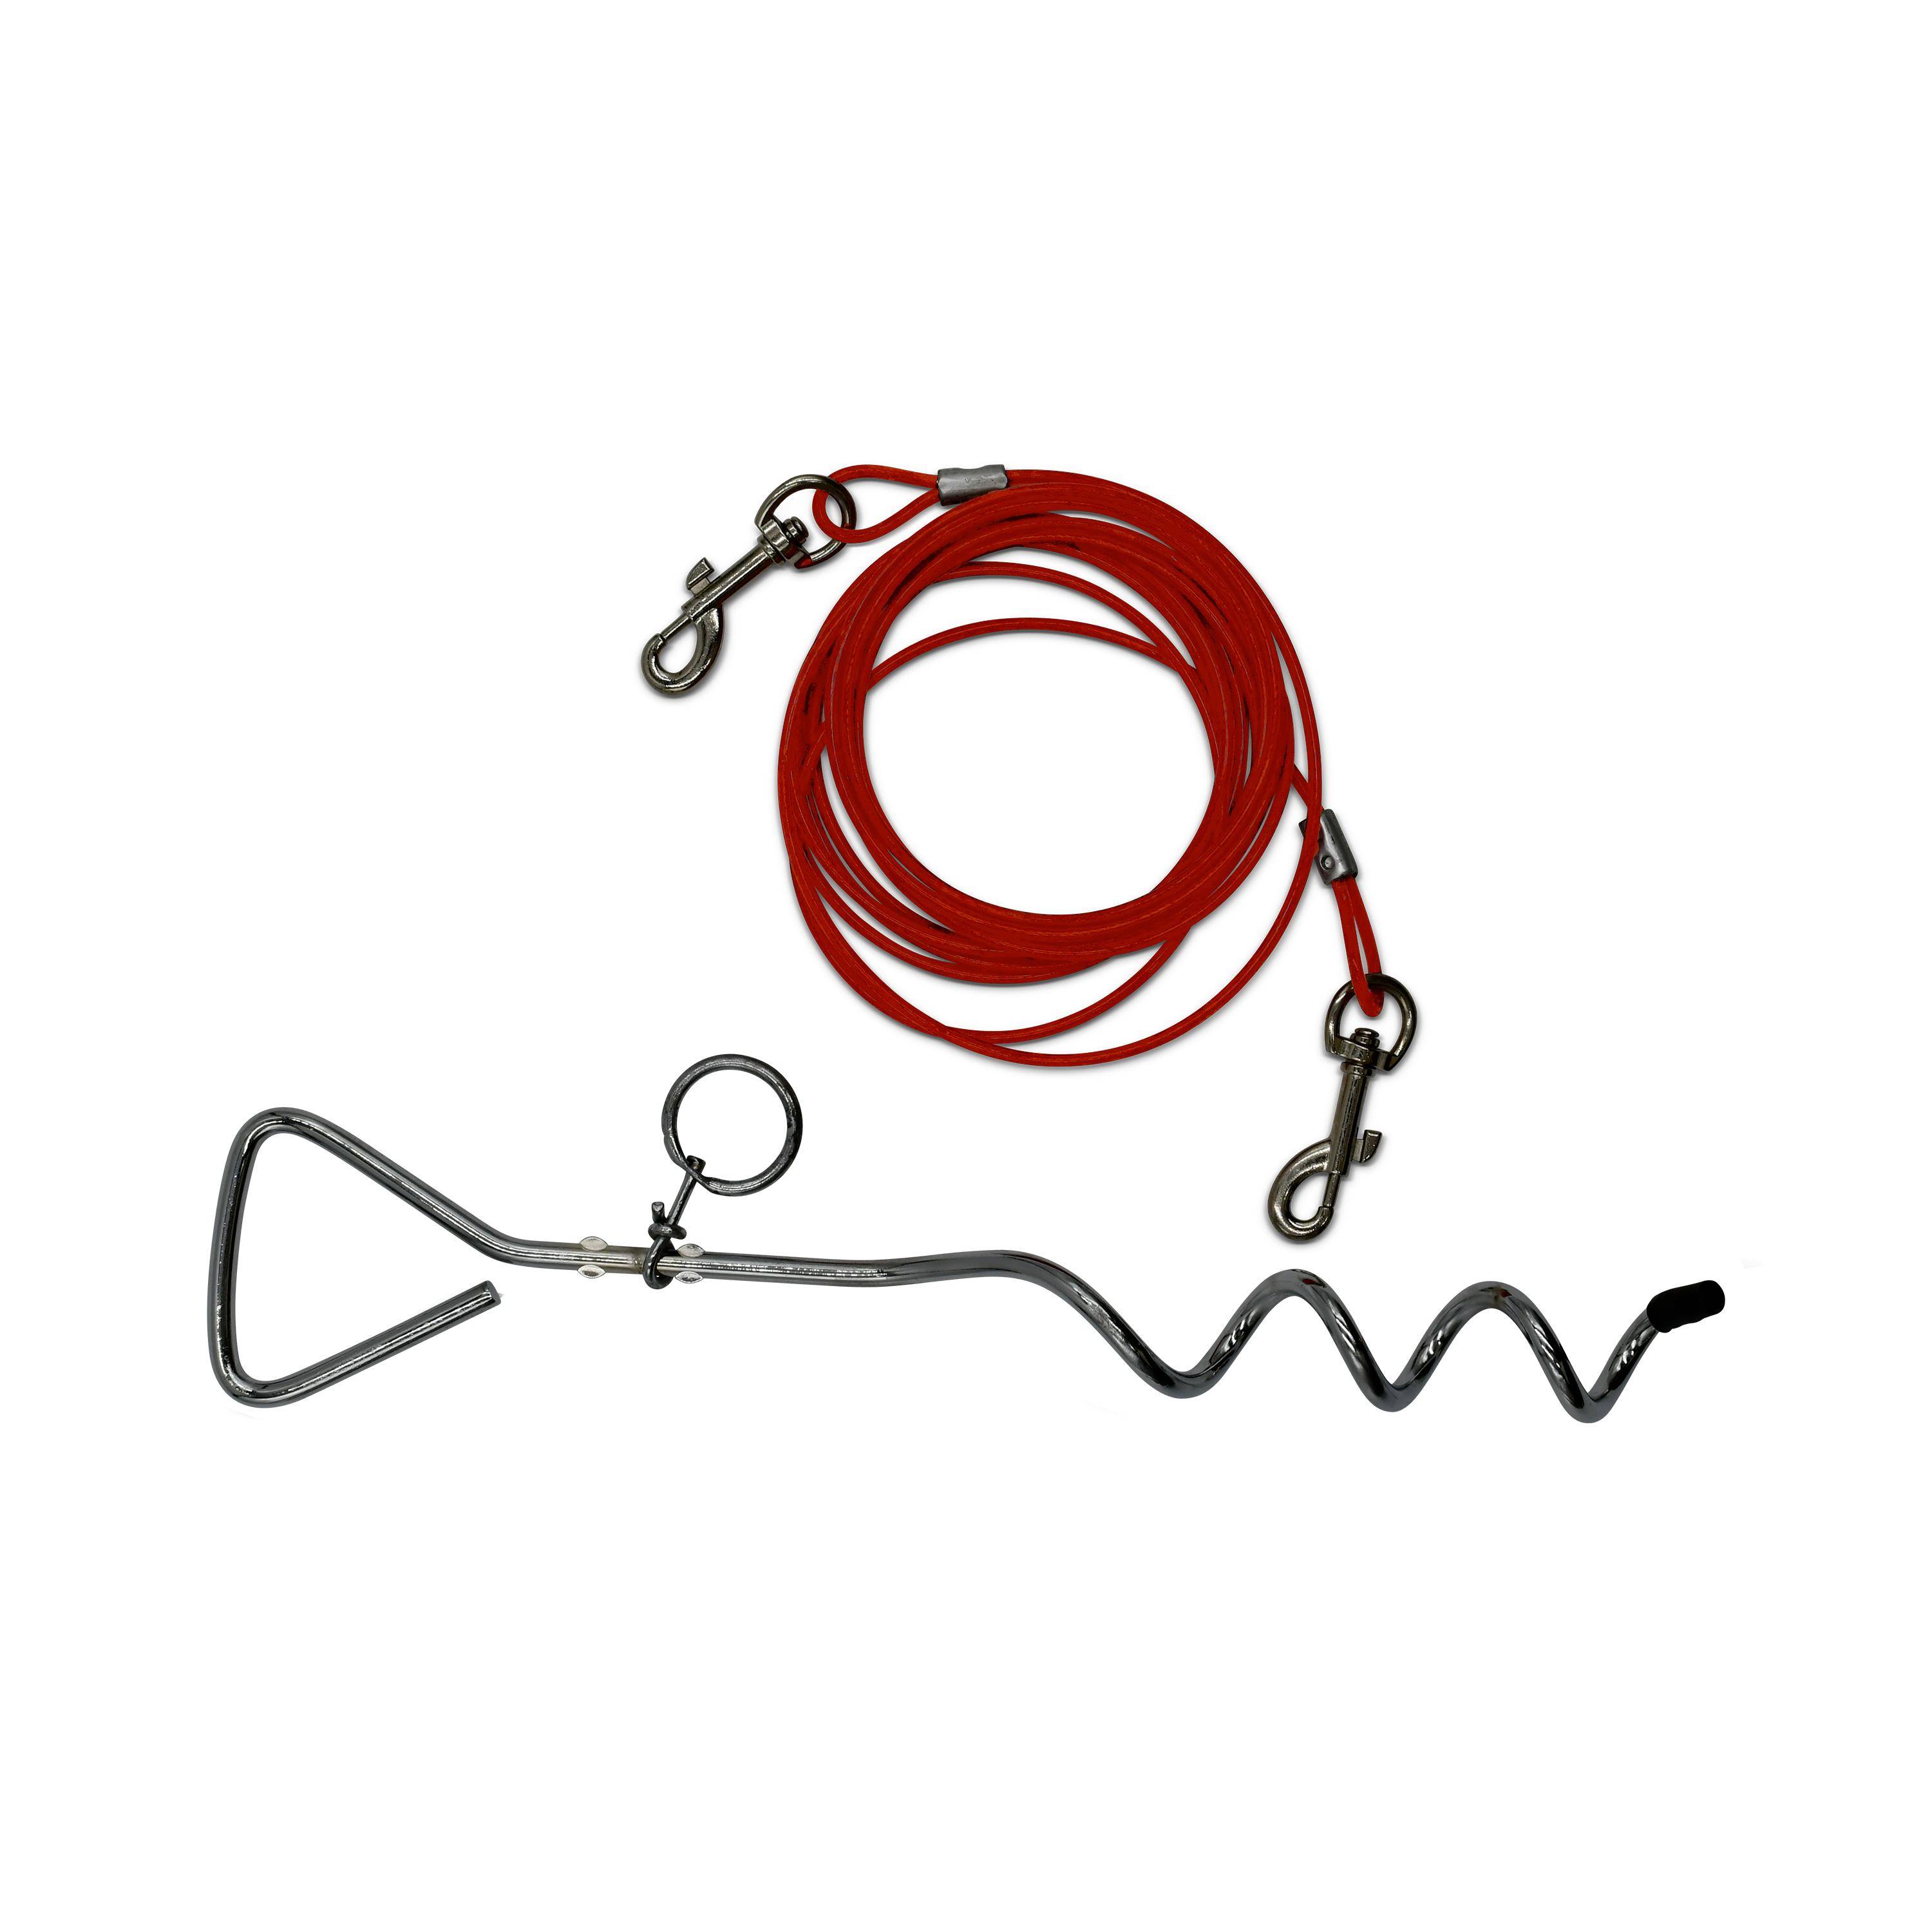 Piquet d’attache en fer de 40 cm et câble gainé de 4.5 m, épaisseur 5 mm, rouge Photo1